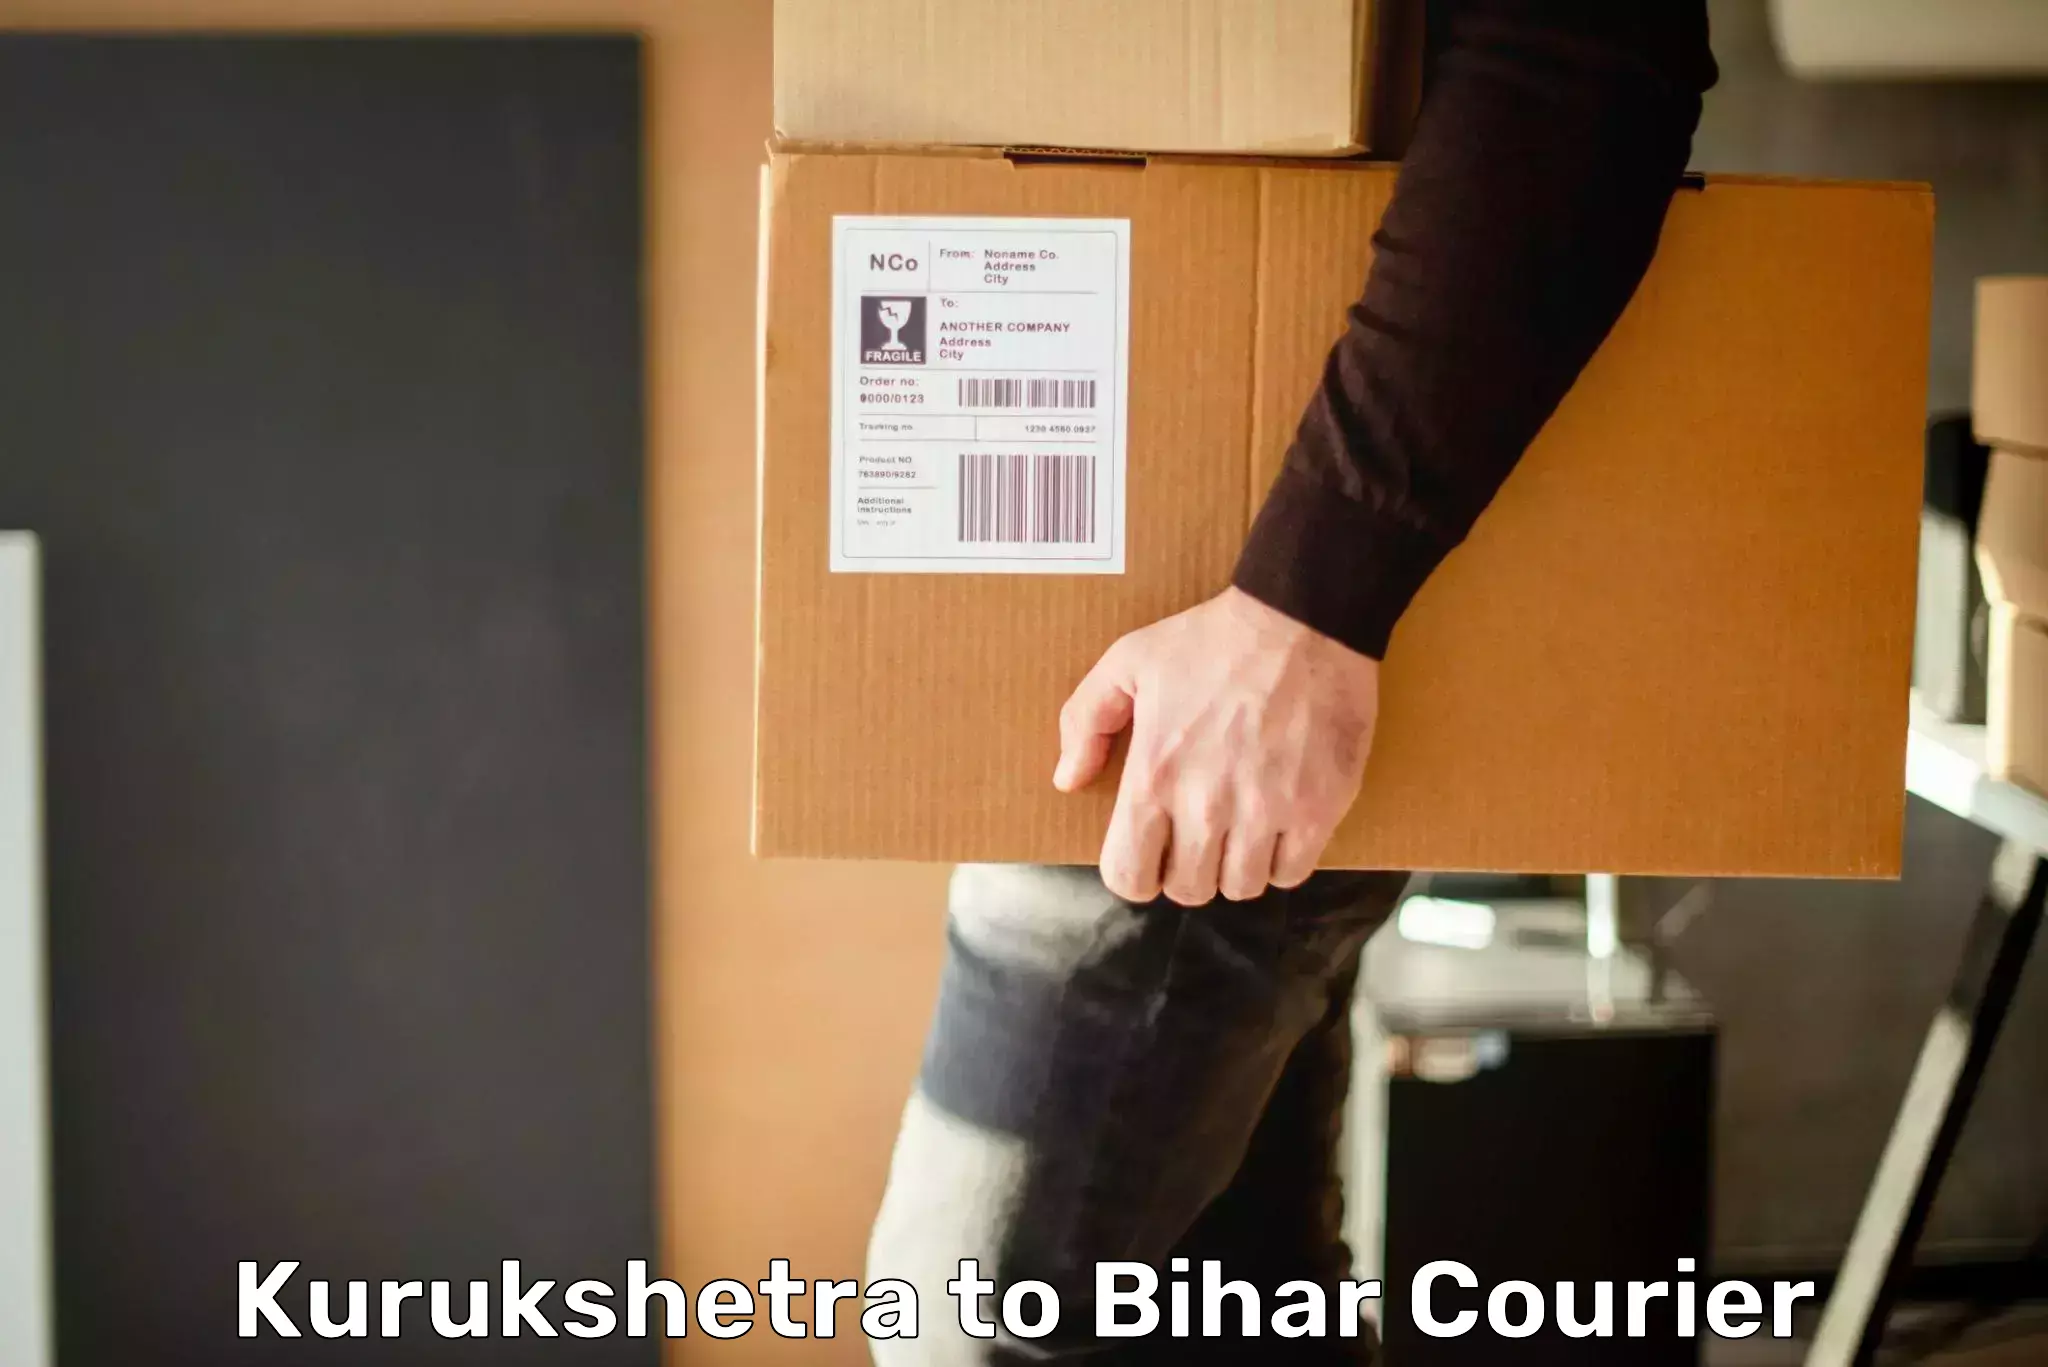 International courier networks Kurukshetra to Bharwara